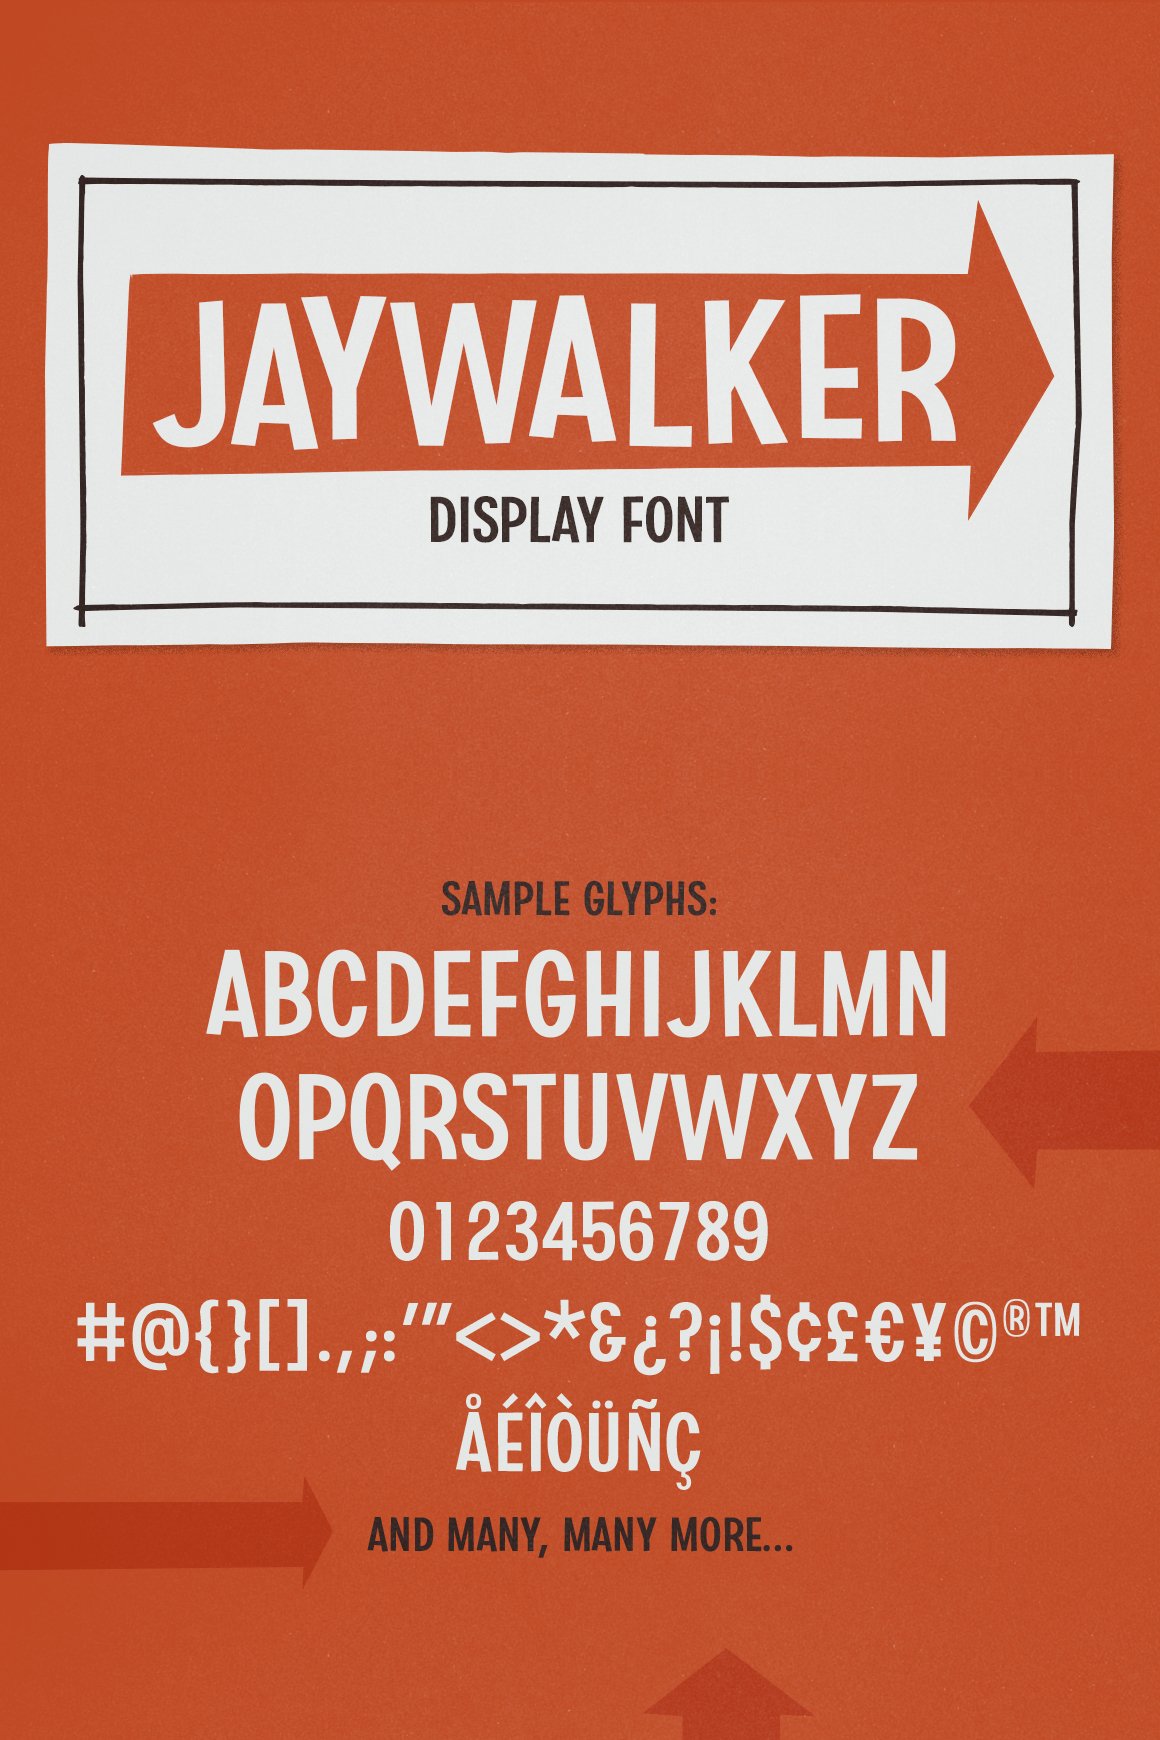 Jaywalker - Display Font cover image.